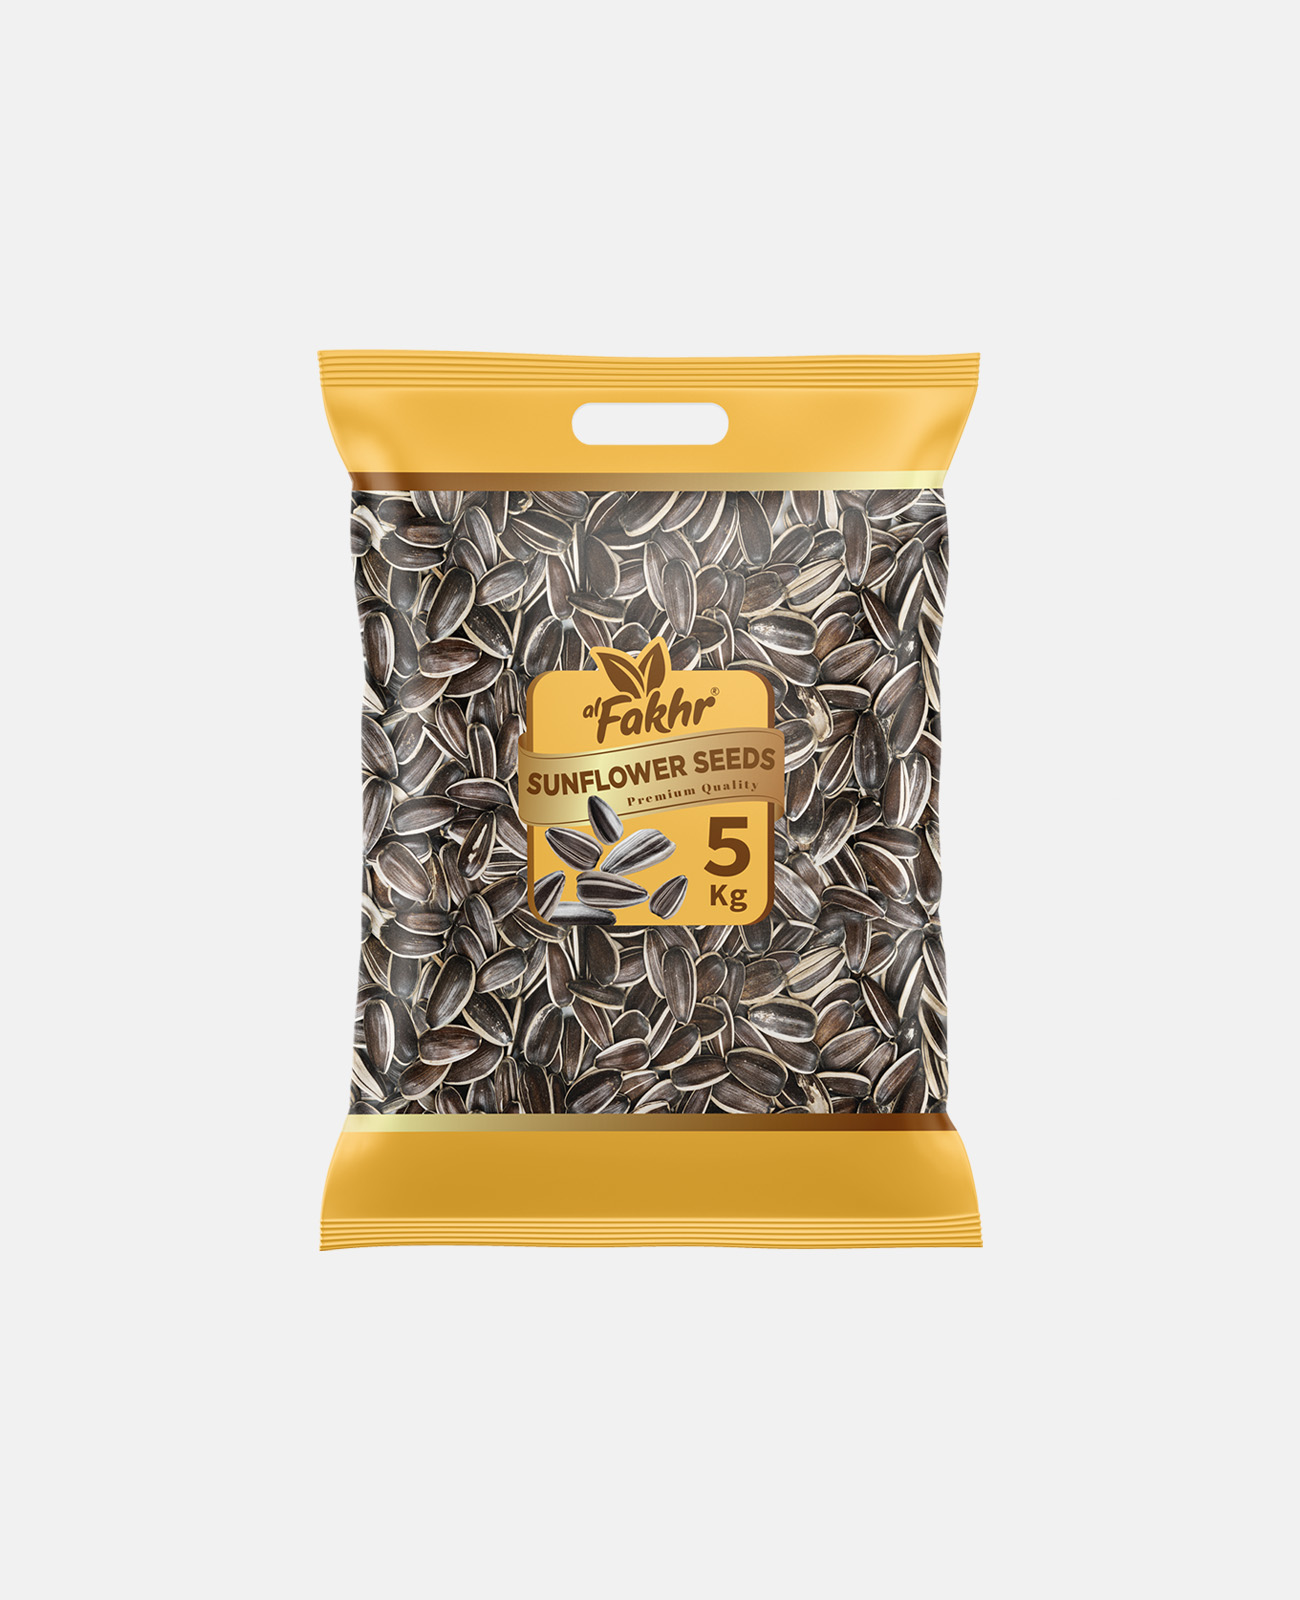 Alfakhr Premium Sunflower Seeds/Salty